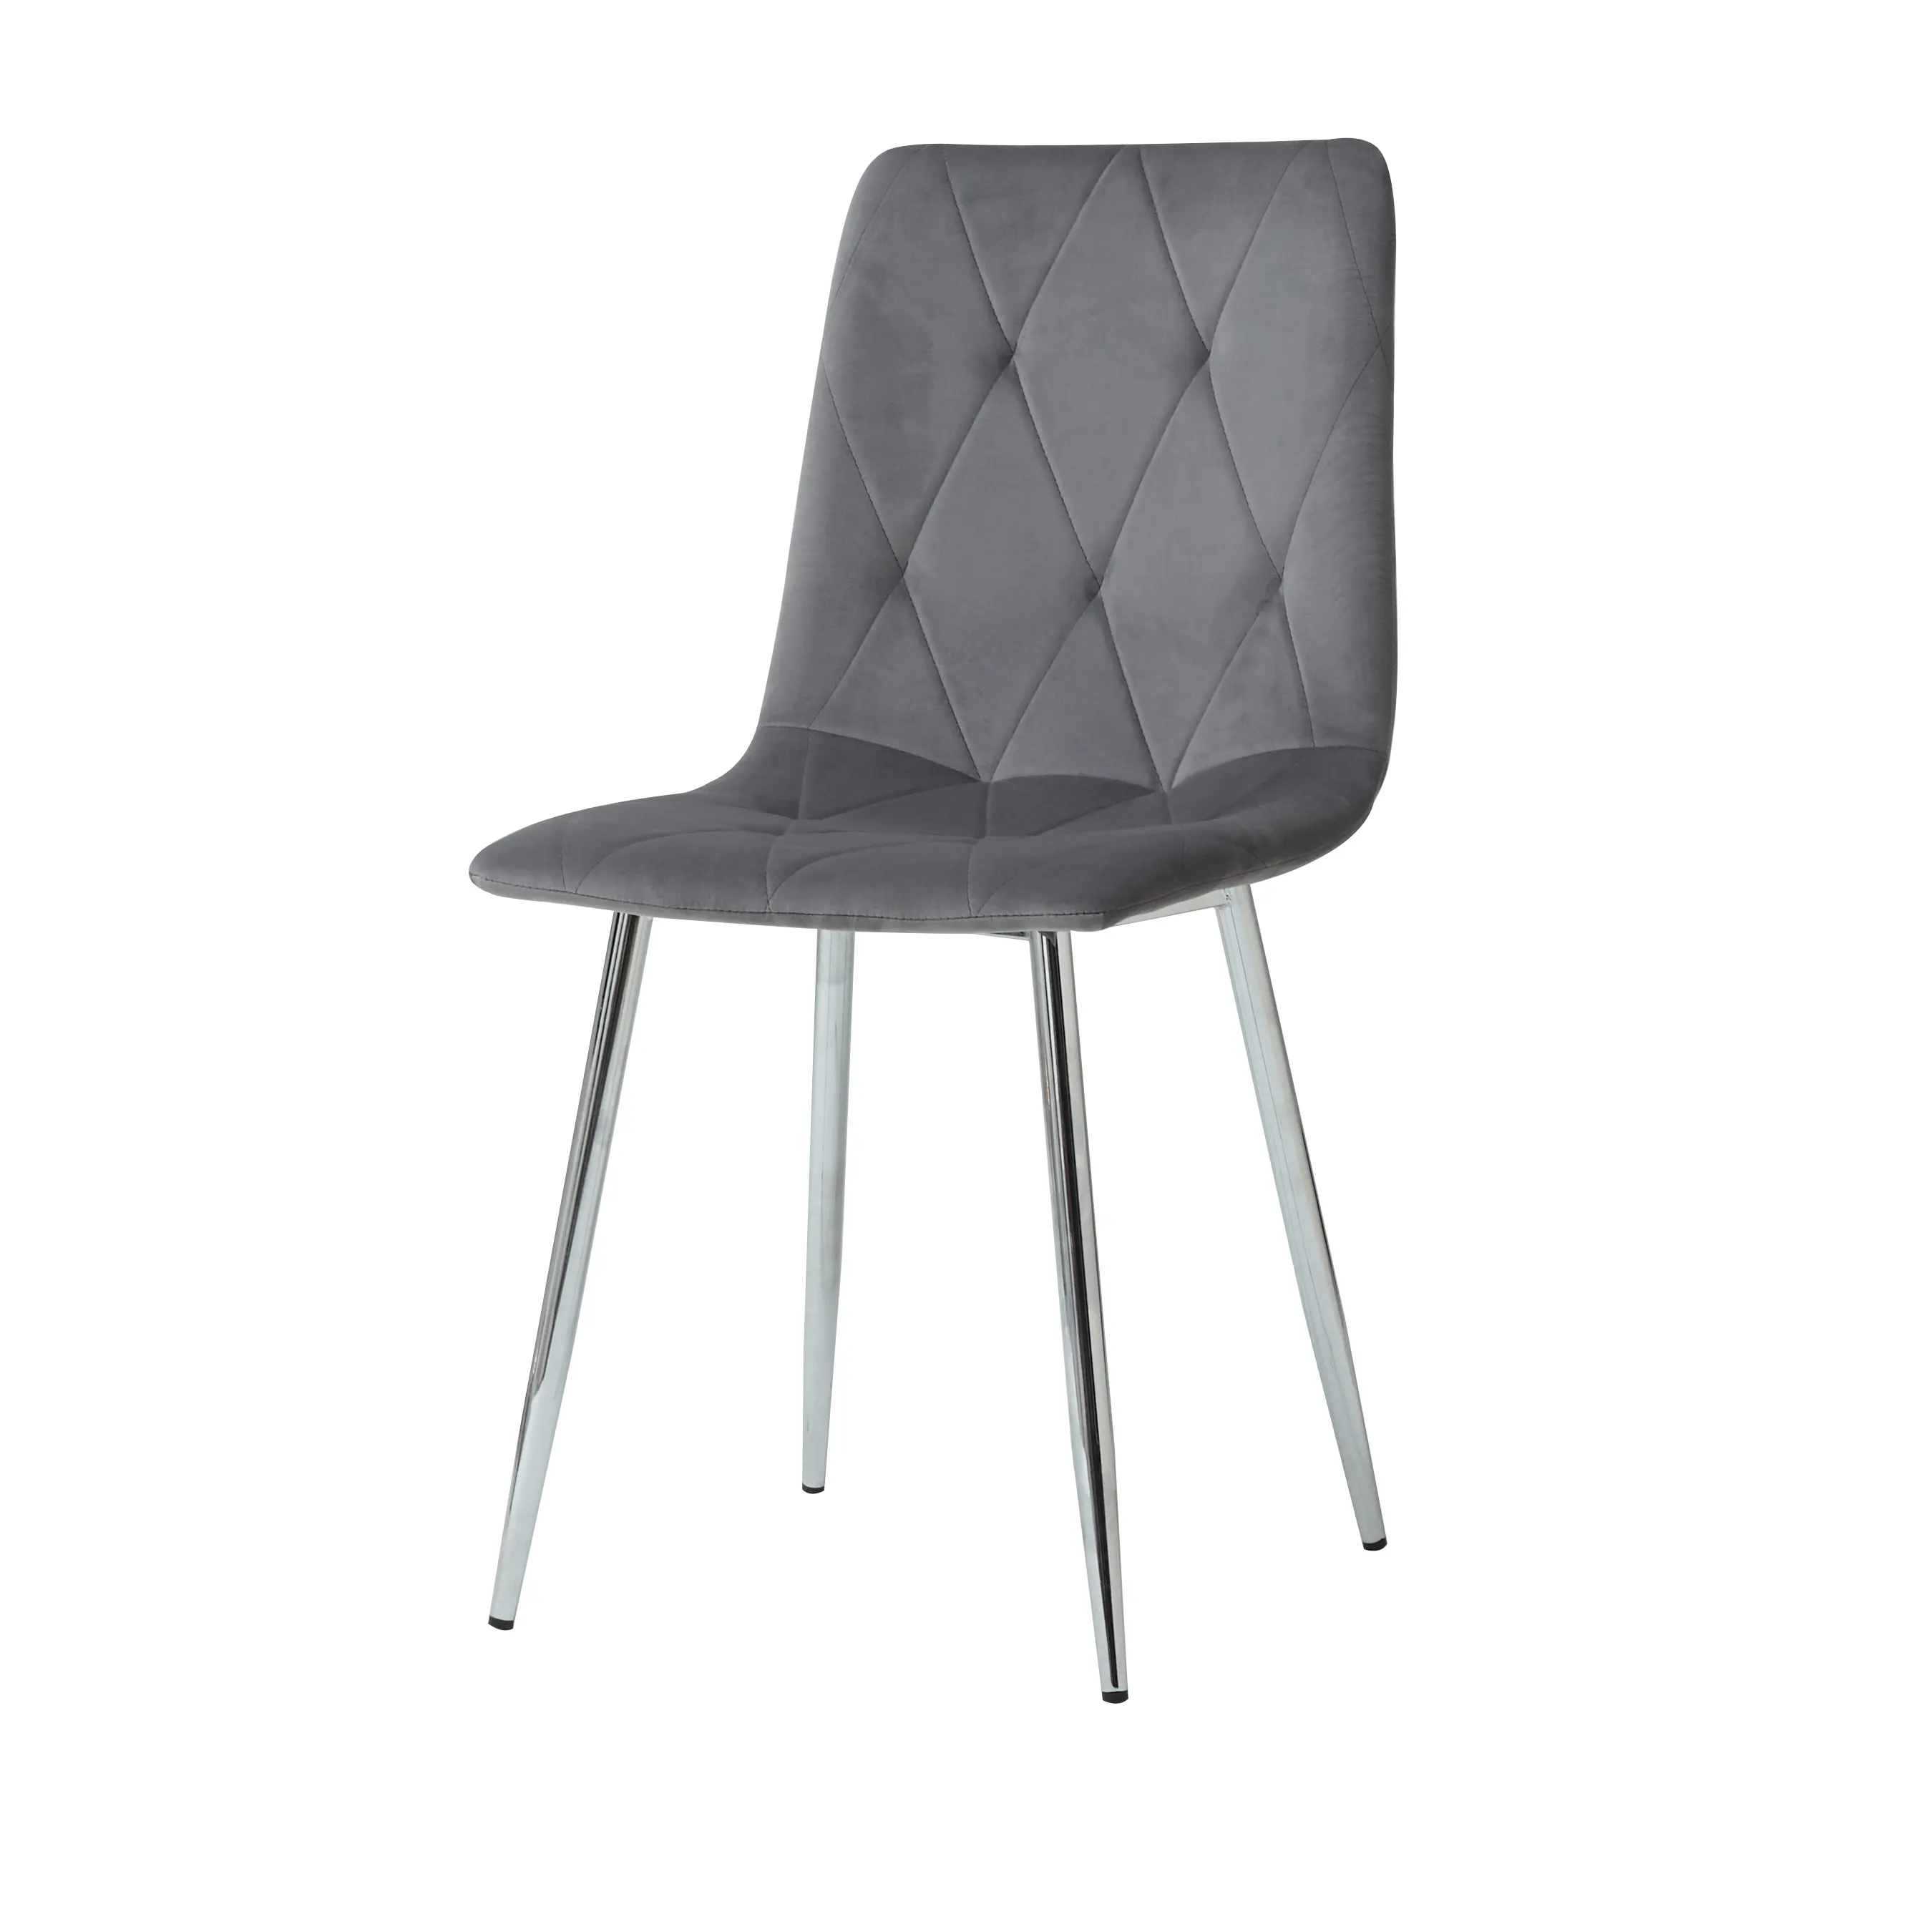 Сверхмощный стальной каркас складной металлический обеденный стул с мягкой подкладкой